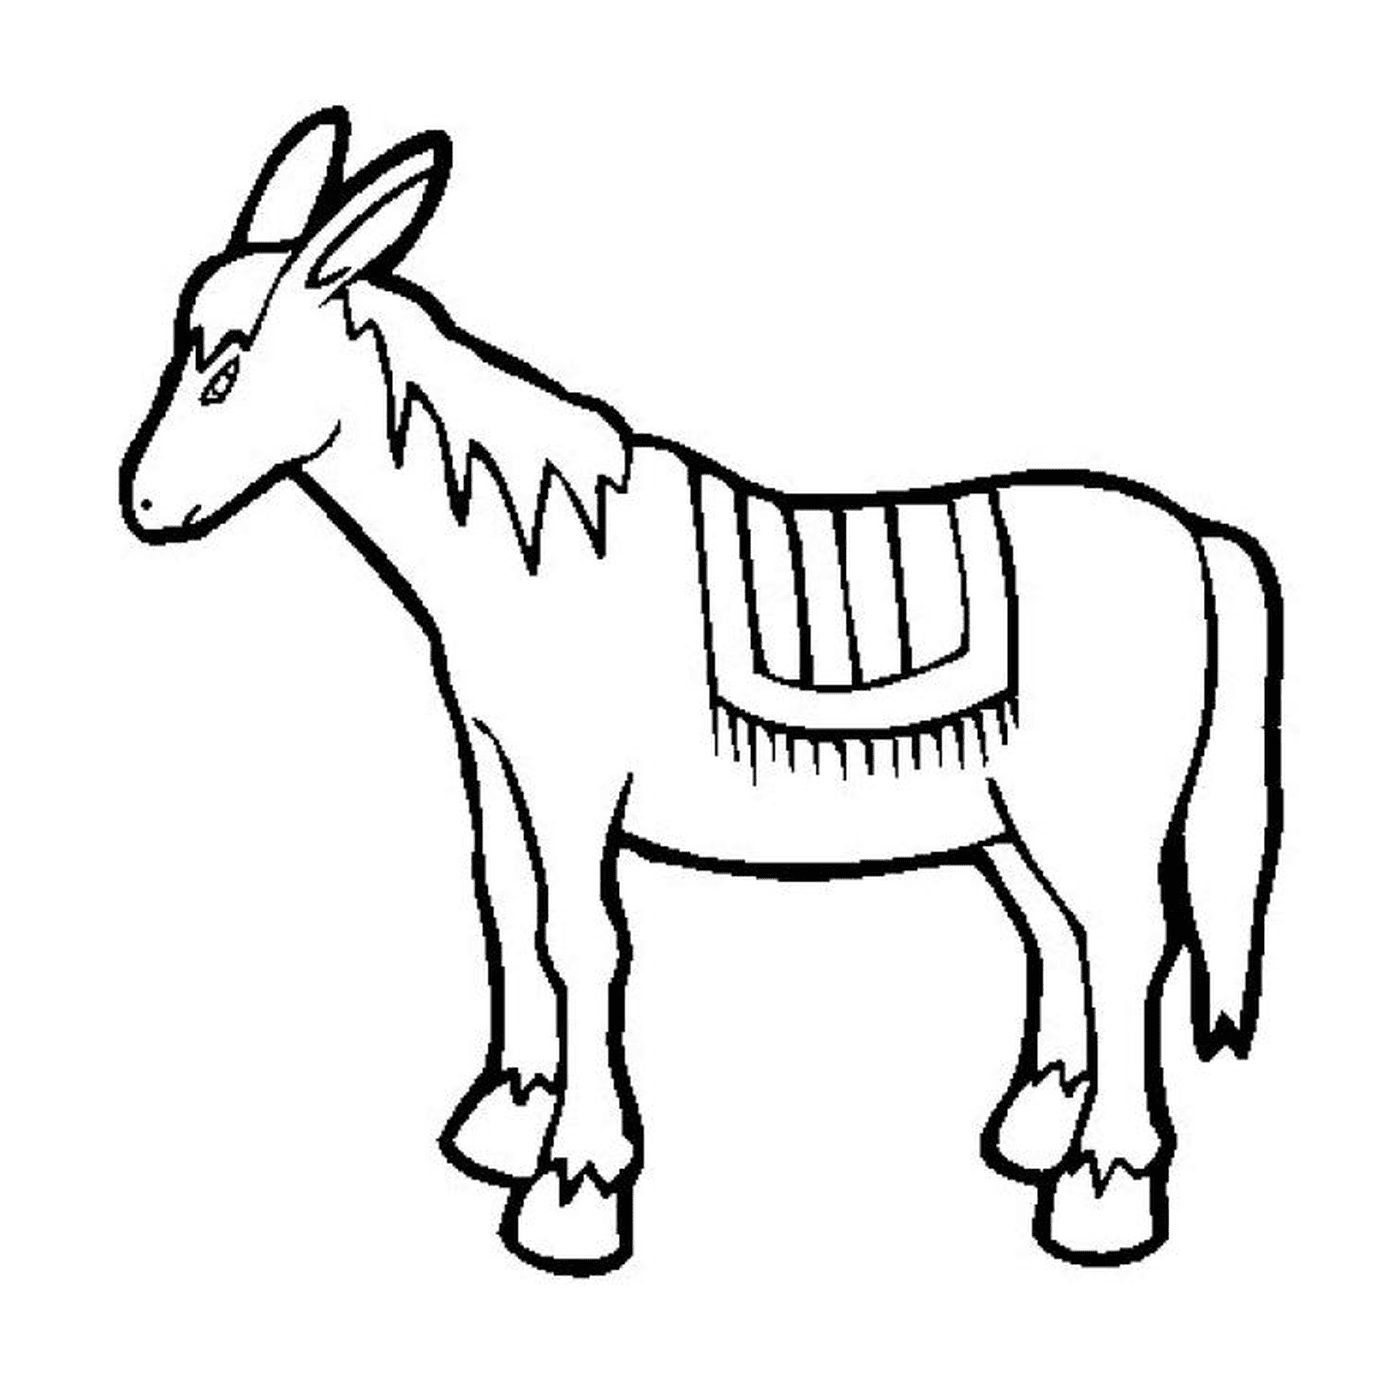  Un'immagine di un animale disegnato 